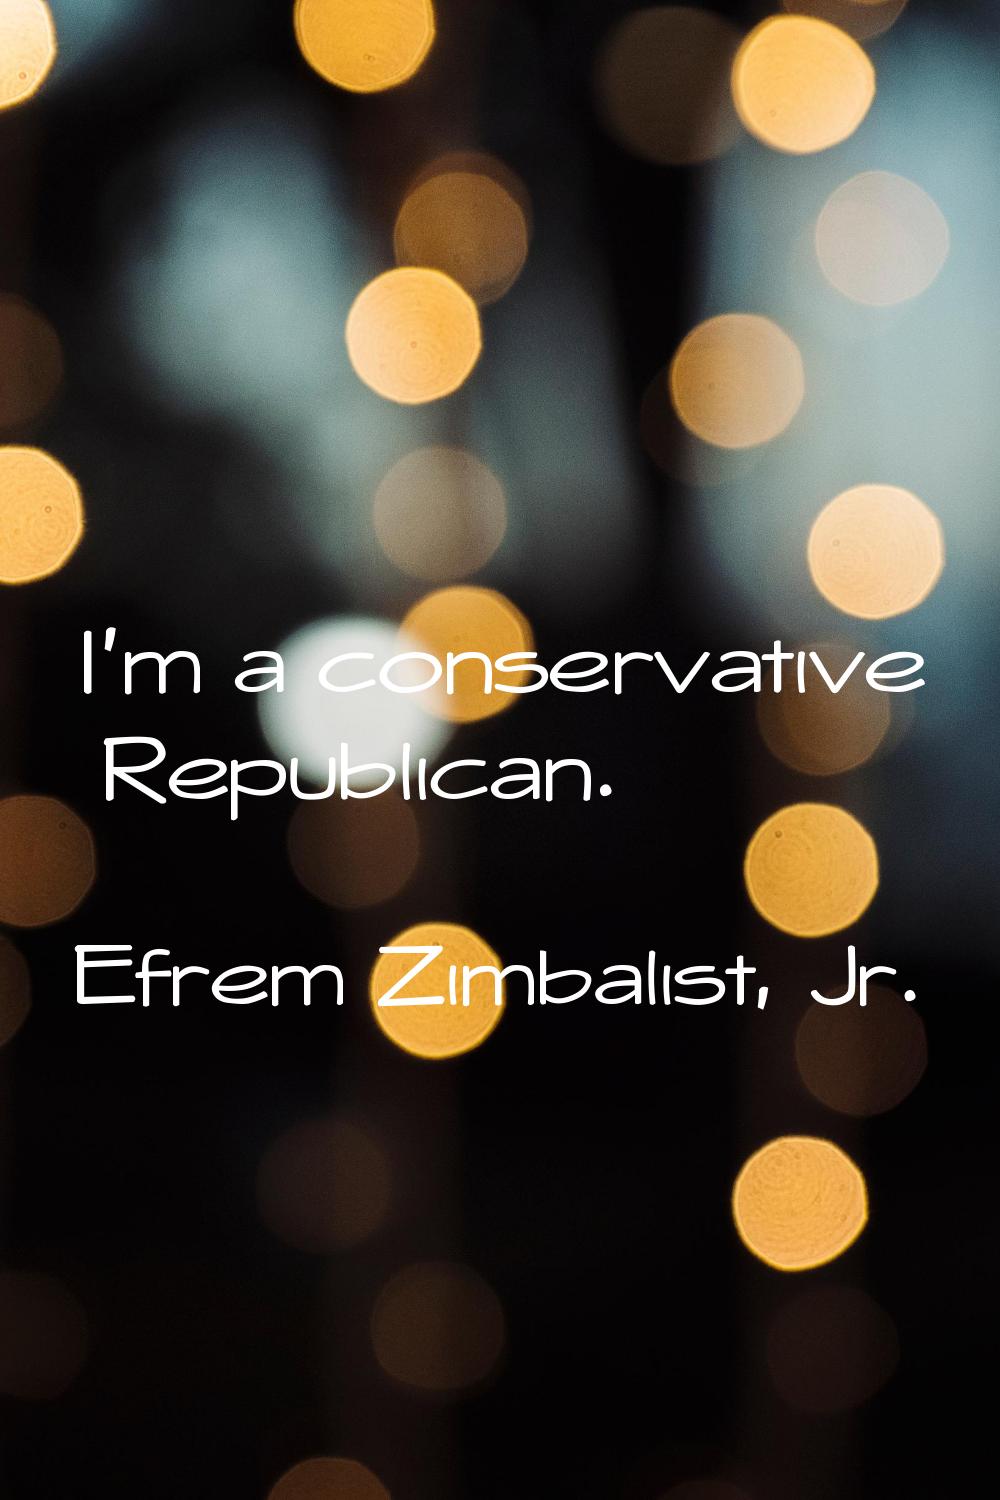 I'm a conservative Republican.